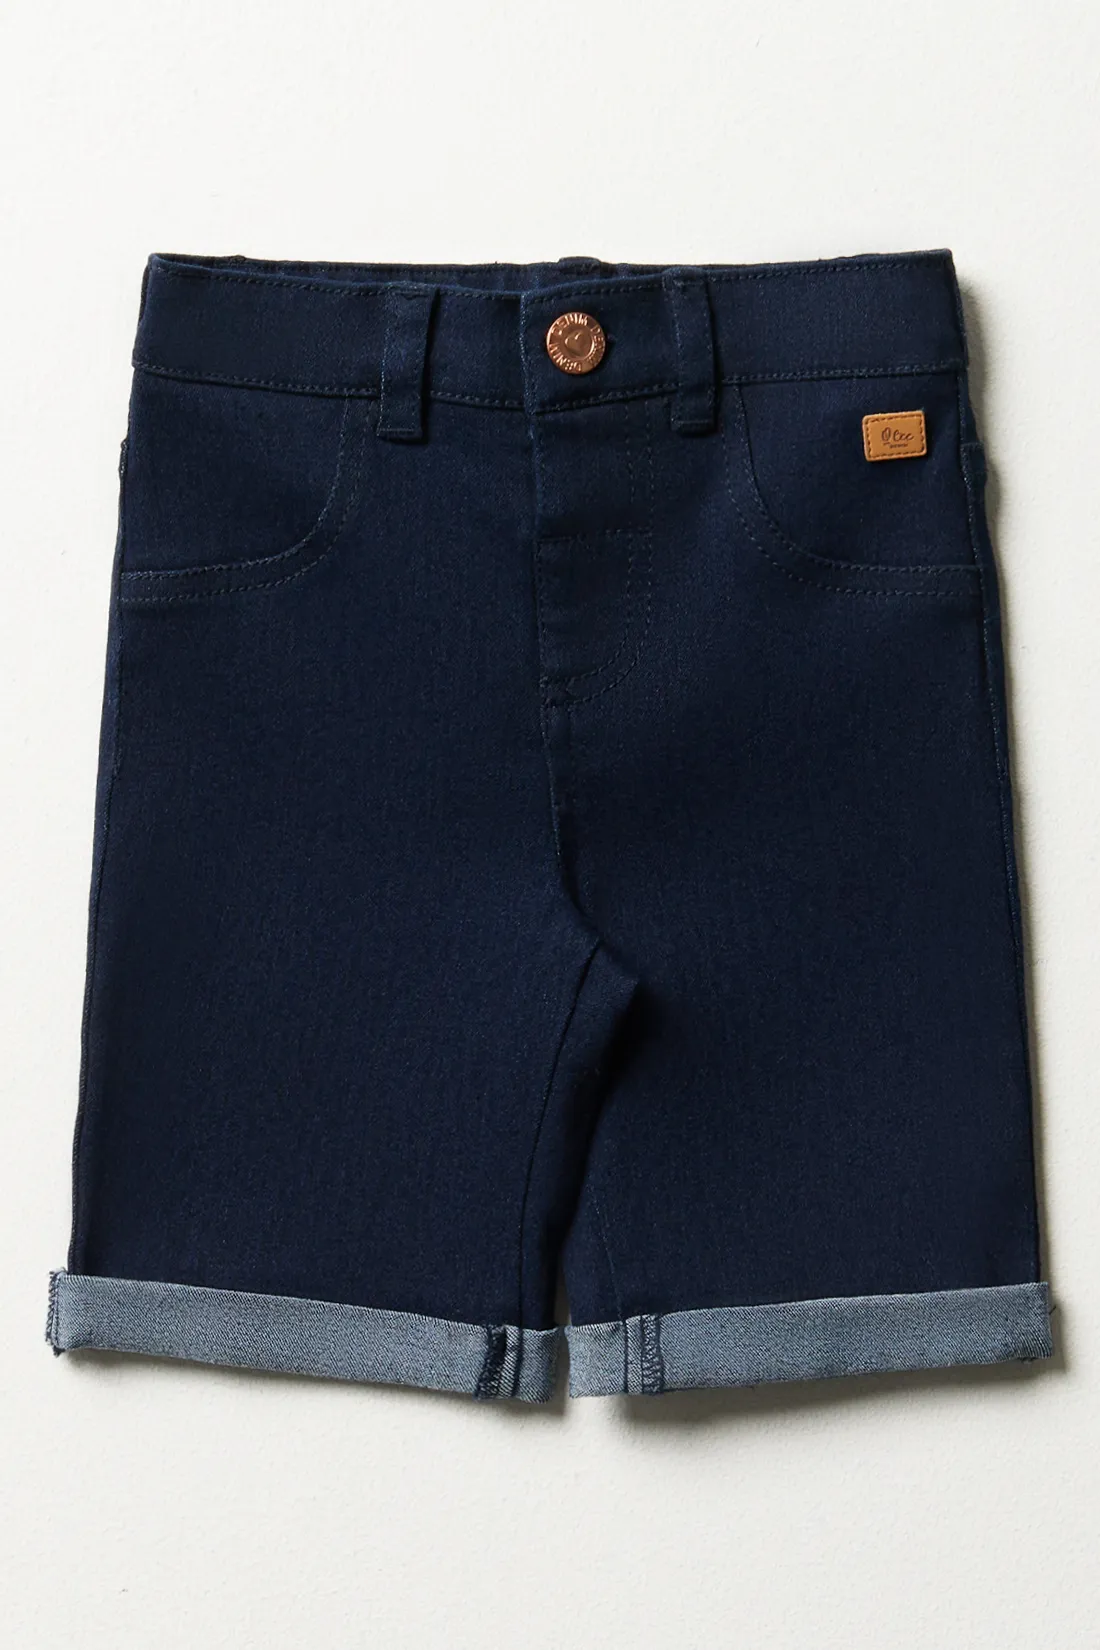 Denim shorts dark blue - GIRLS 2-10 YEARS Bottoms & Jeans | Ackermans